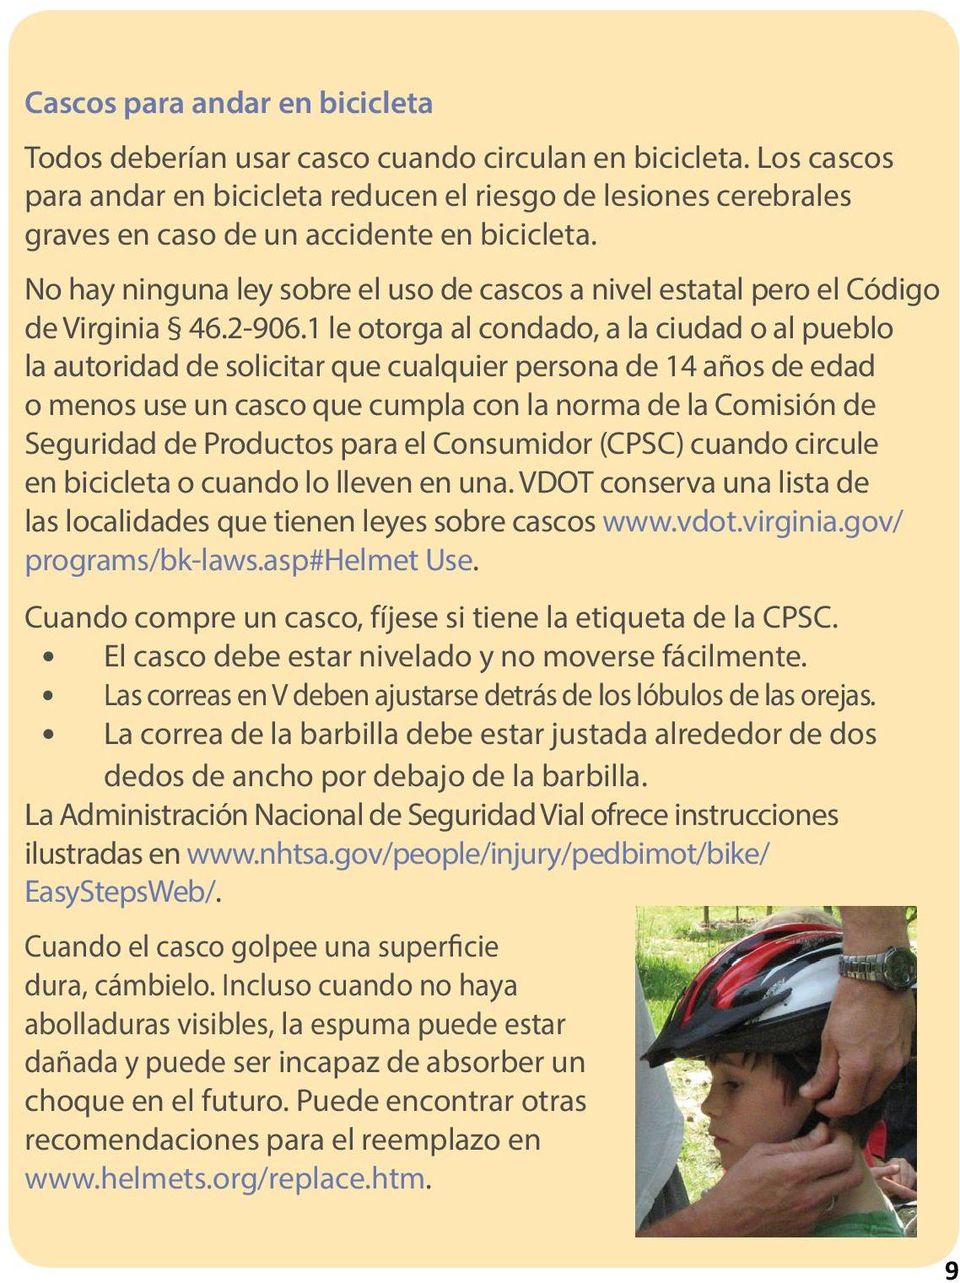 No hay ninguna ley sobre el uso de cascos a nivel estatal pero el Código de Virginia 46.2-906.